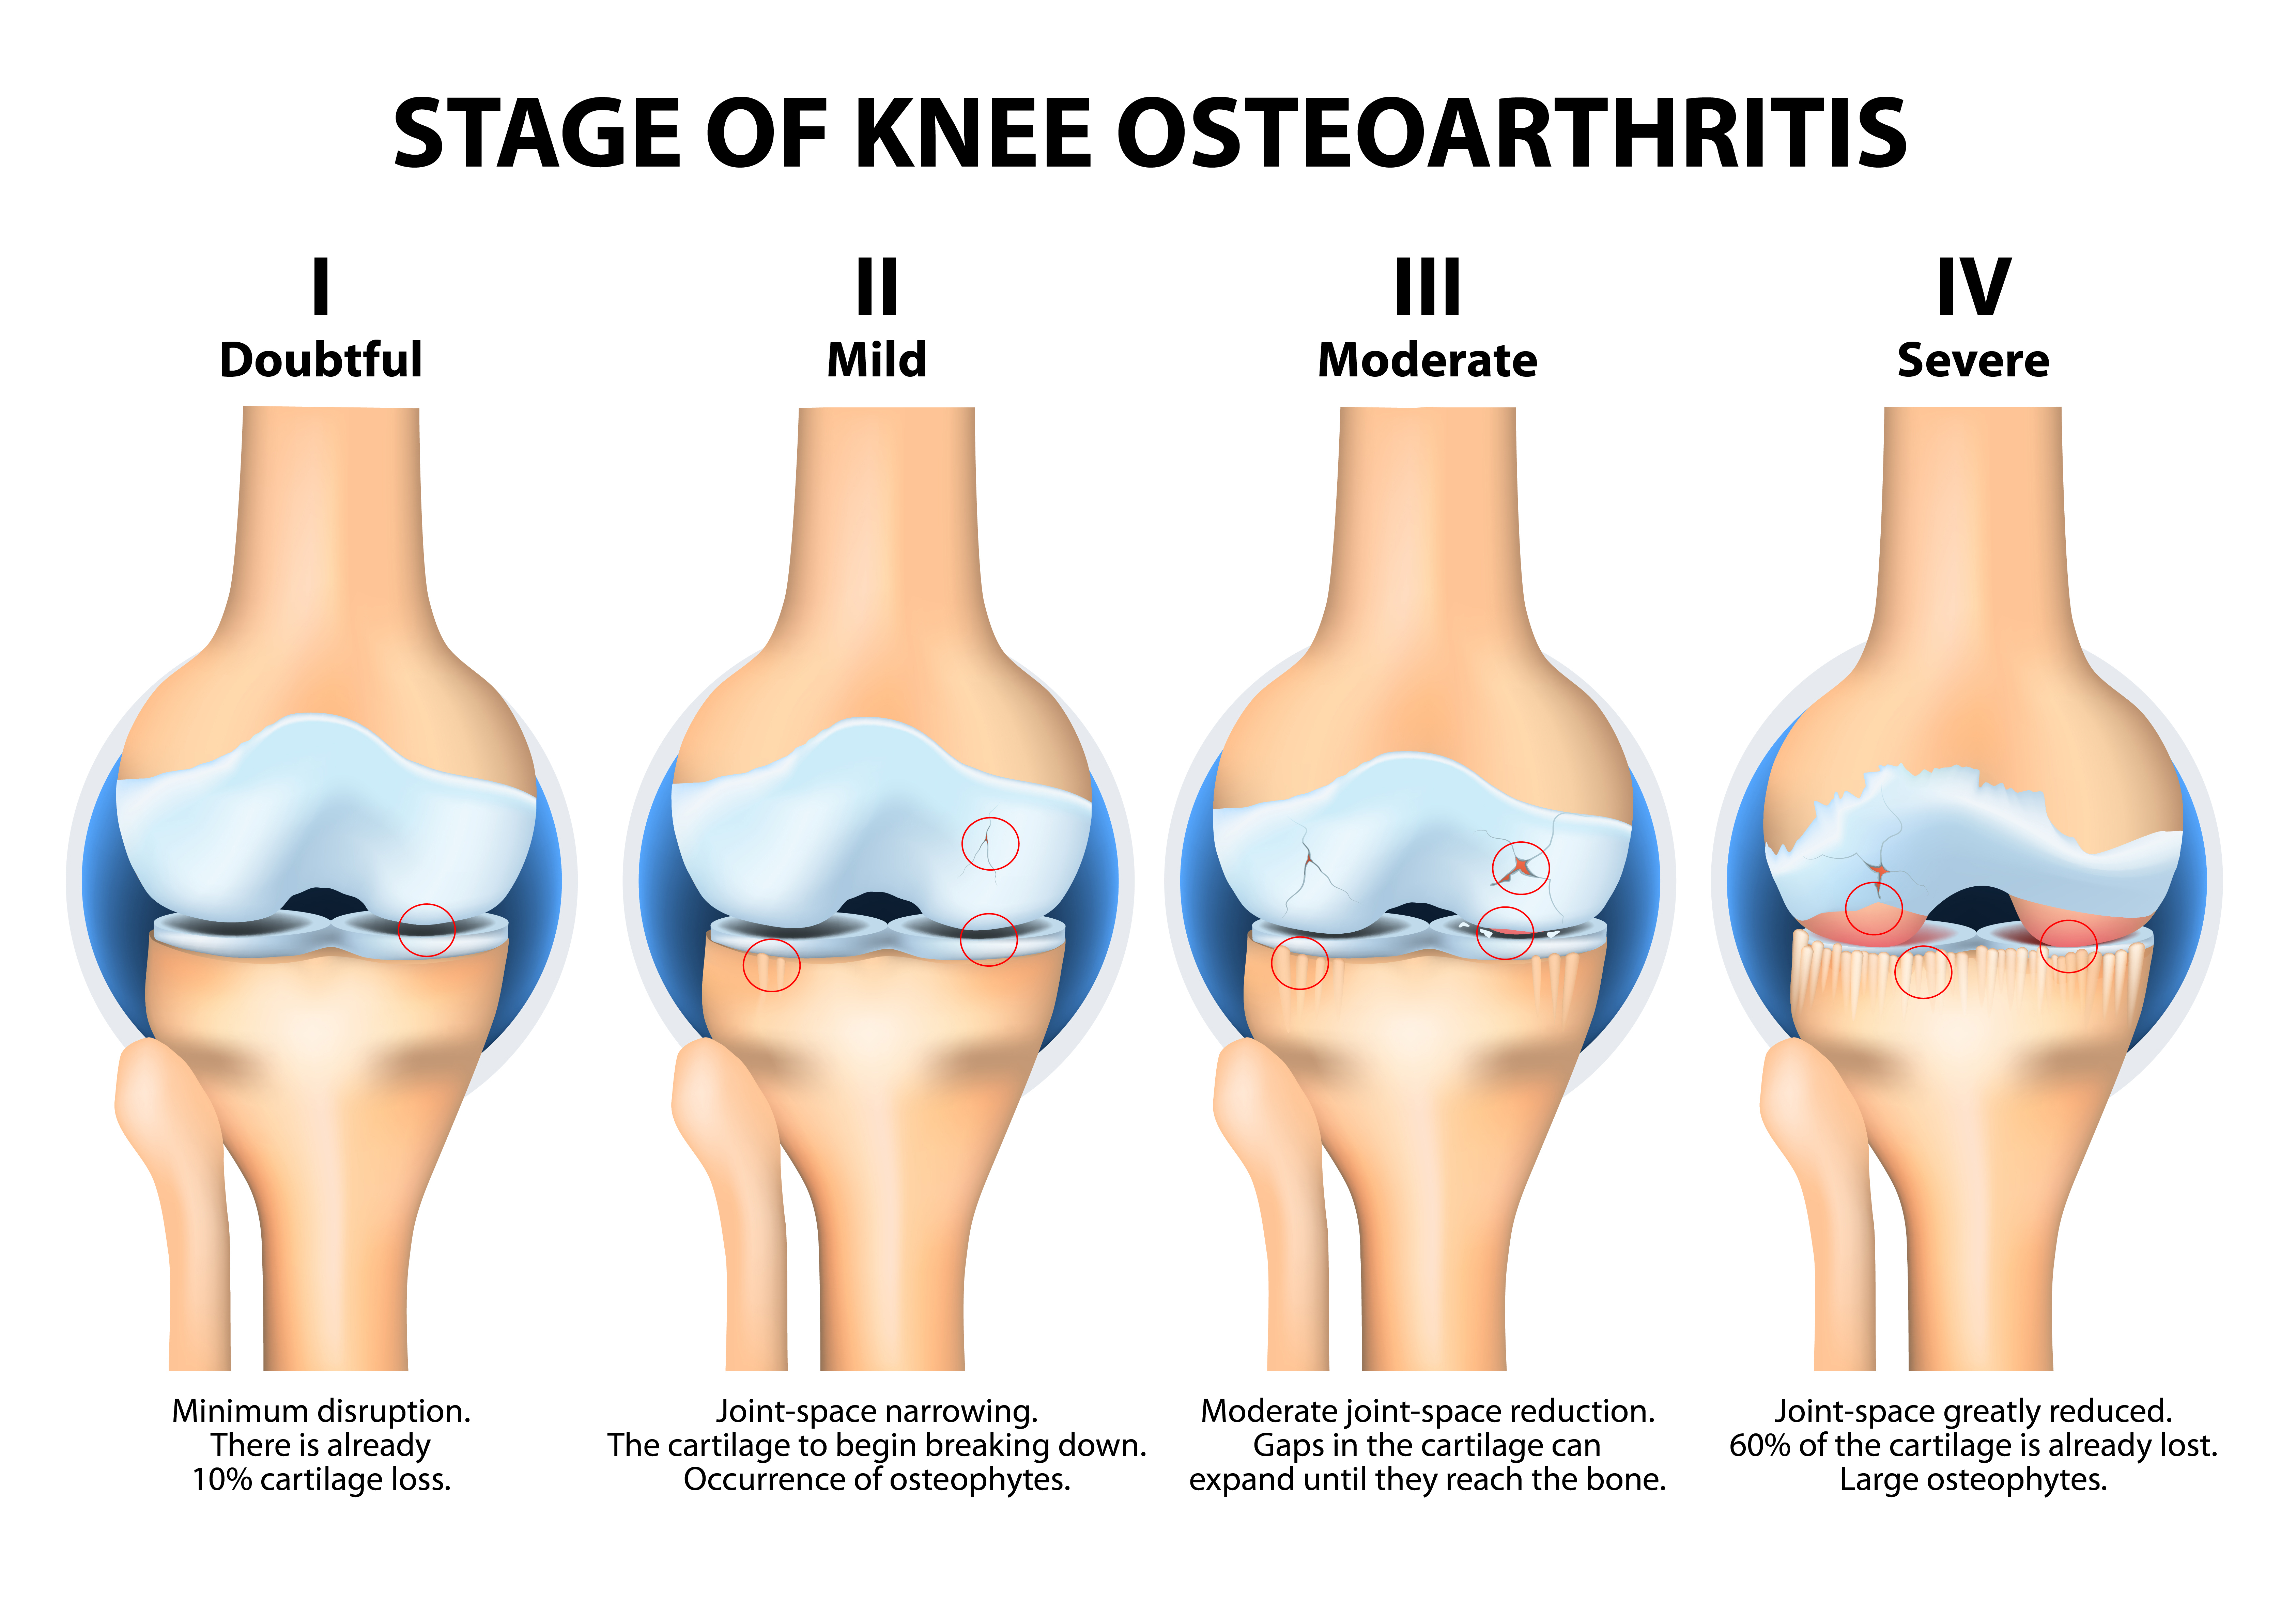 На начальном этапе можно. Остеоартрит 1-2 степени. Деформирующий артроз коленного сустава стадии. Деформирующий артроз 2-3 степени коленного сустава. Деформирующий остеоартрит коленного сустава.